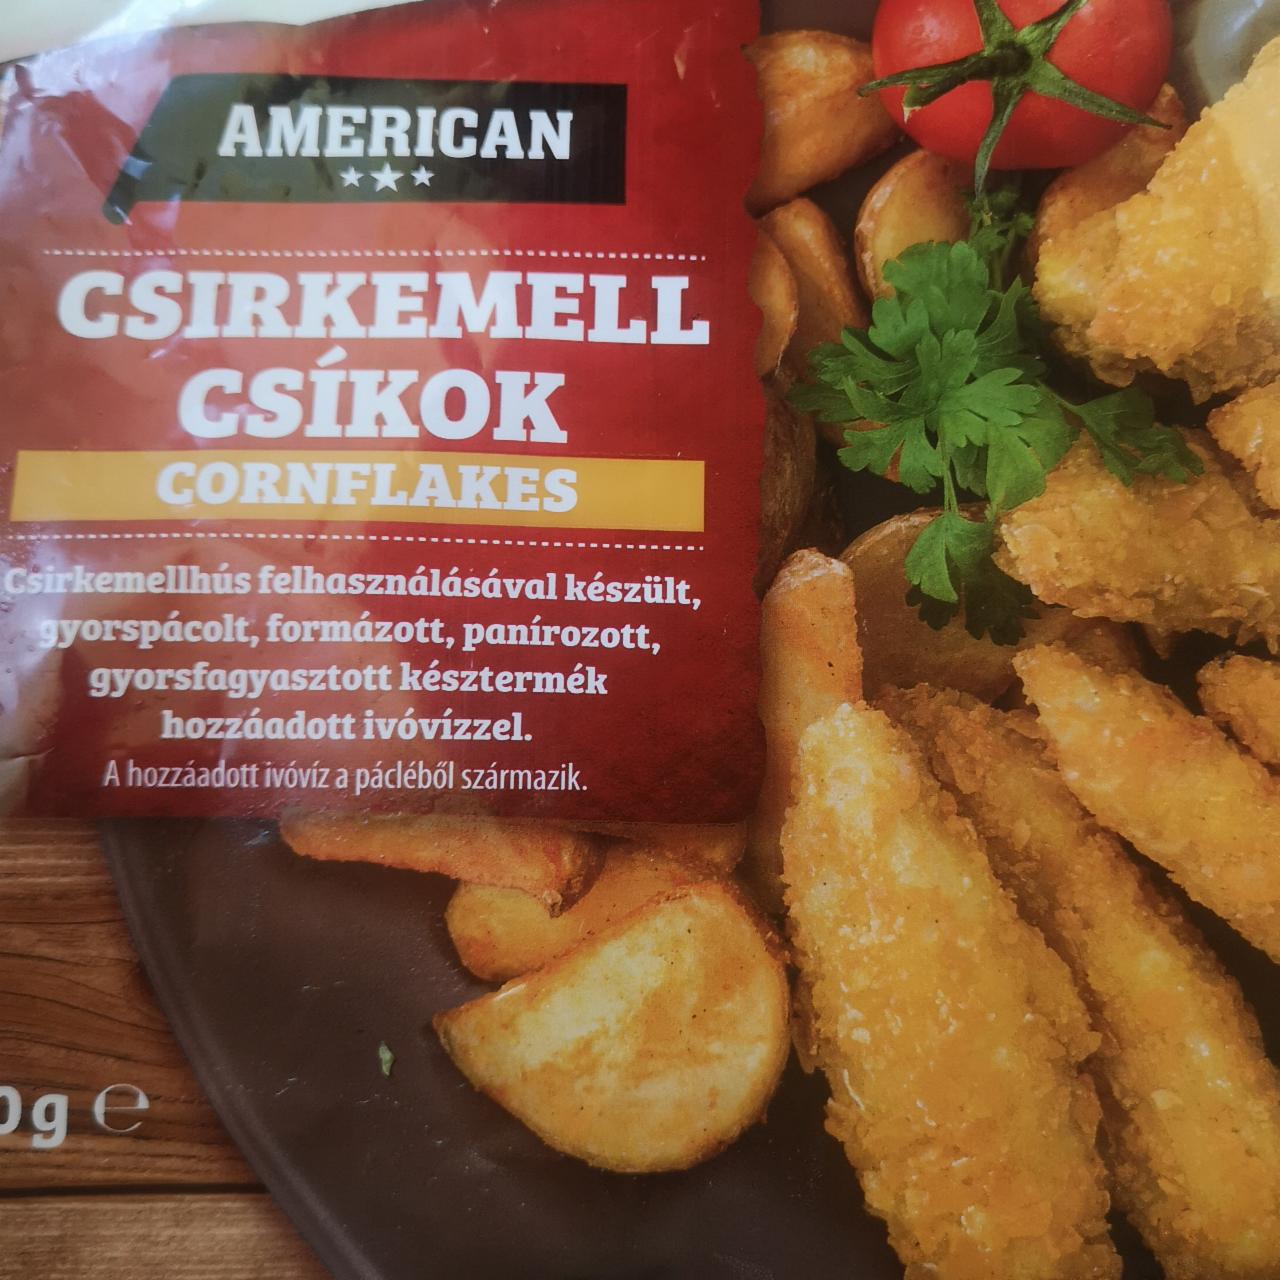 Képek - Csirkemell csíkok cornflakes American